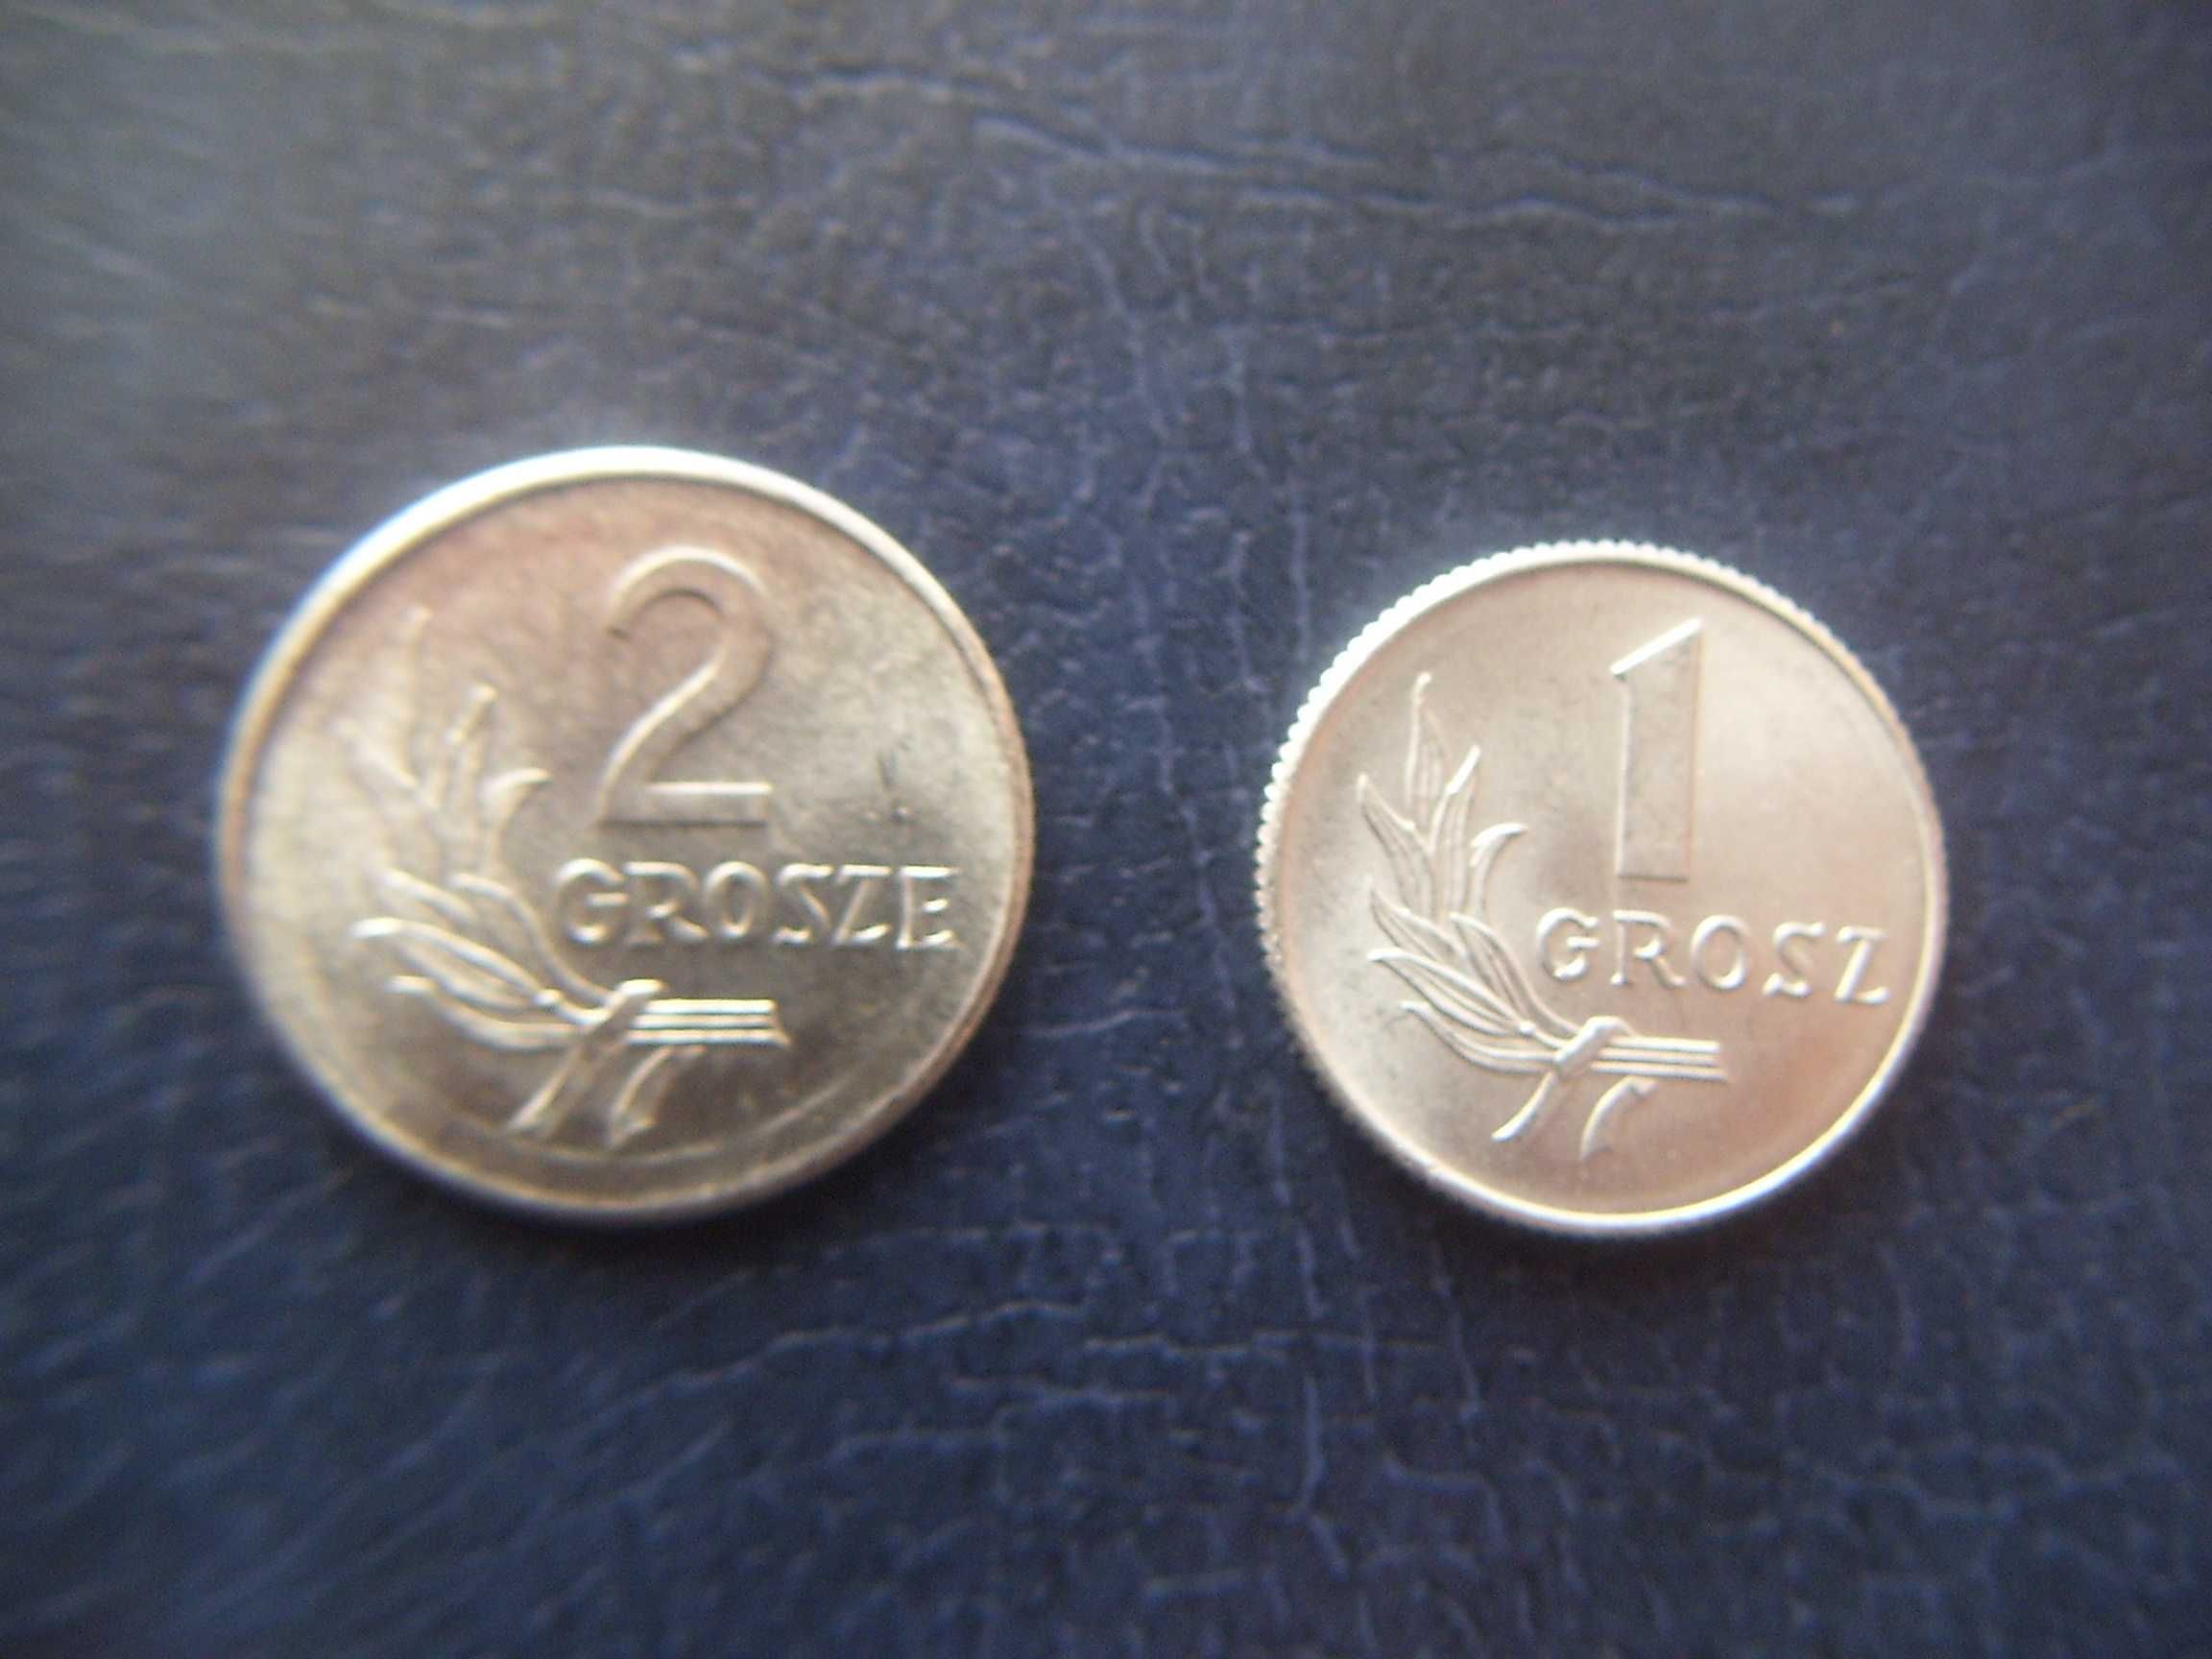 Stare monety 1 gr i 2 grosze 1949 PRL  stan menniczy